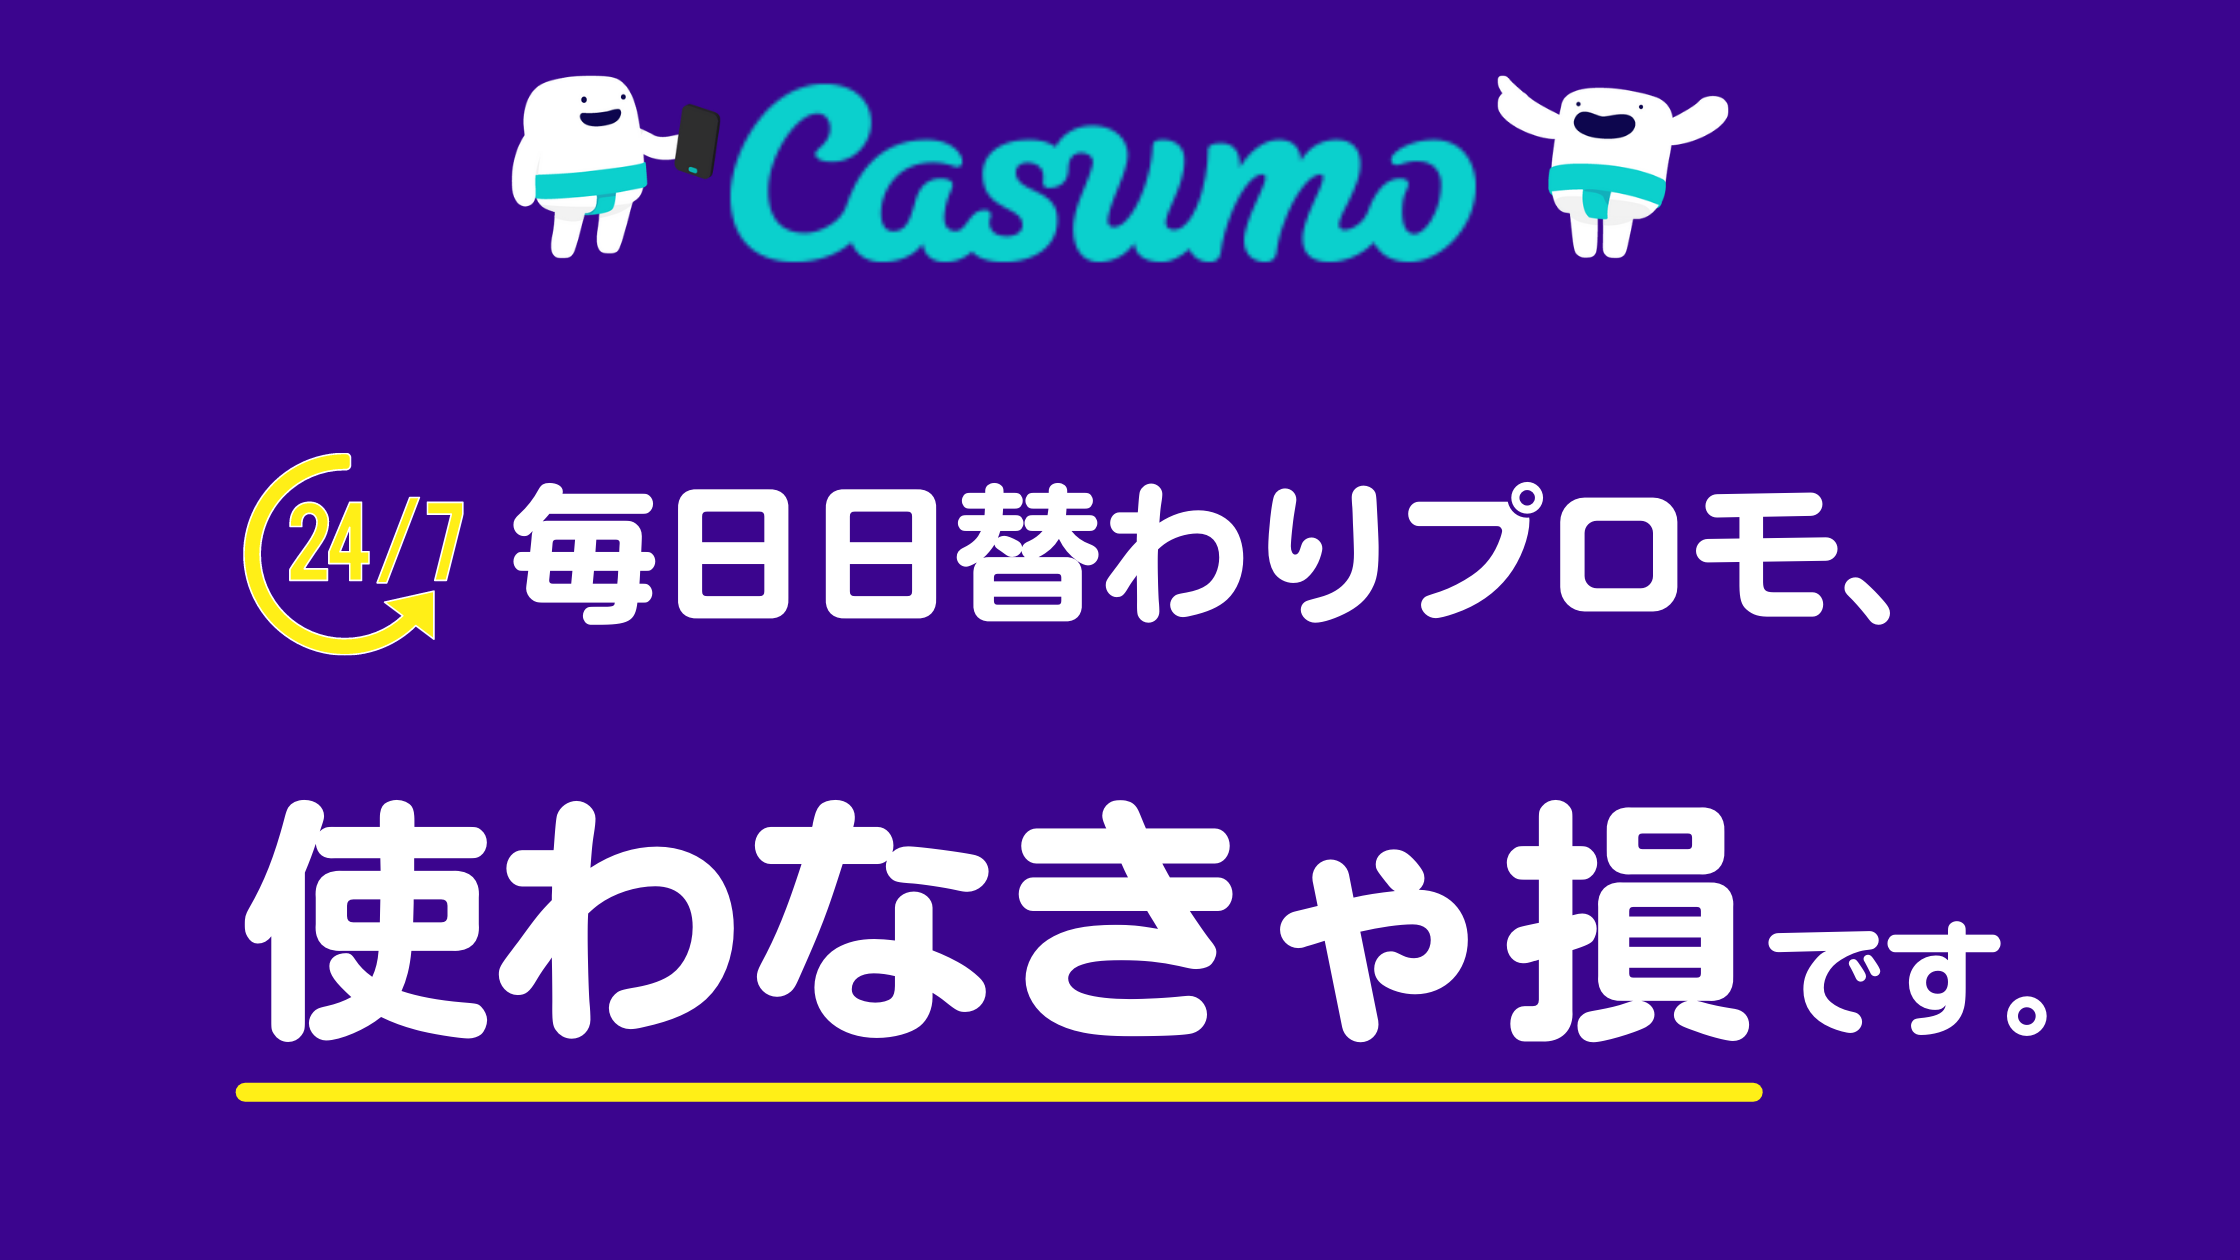 【カスモカジノ】Casumoなら１週間毎日プロモーションありまる